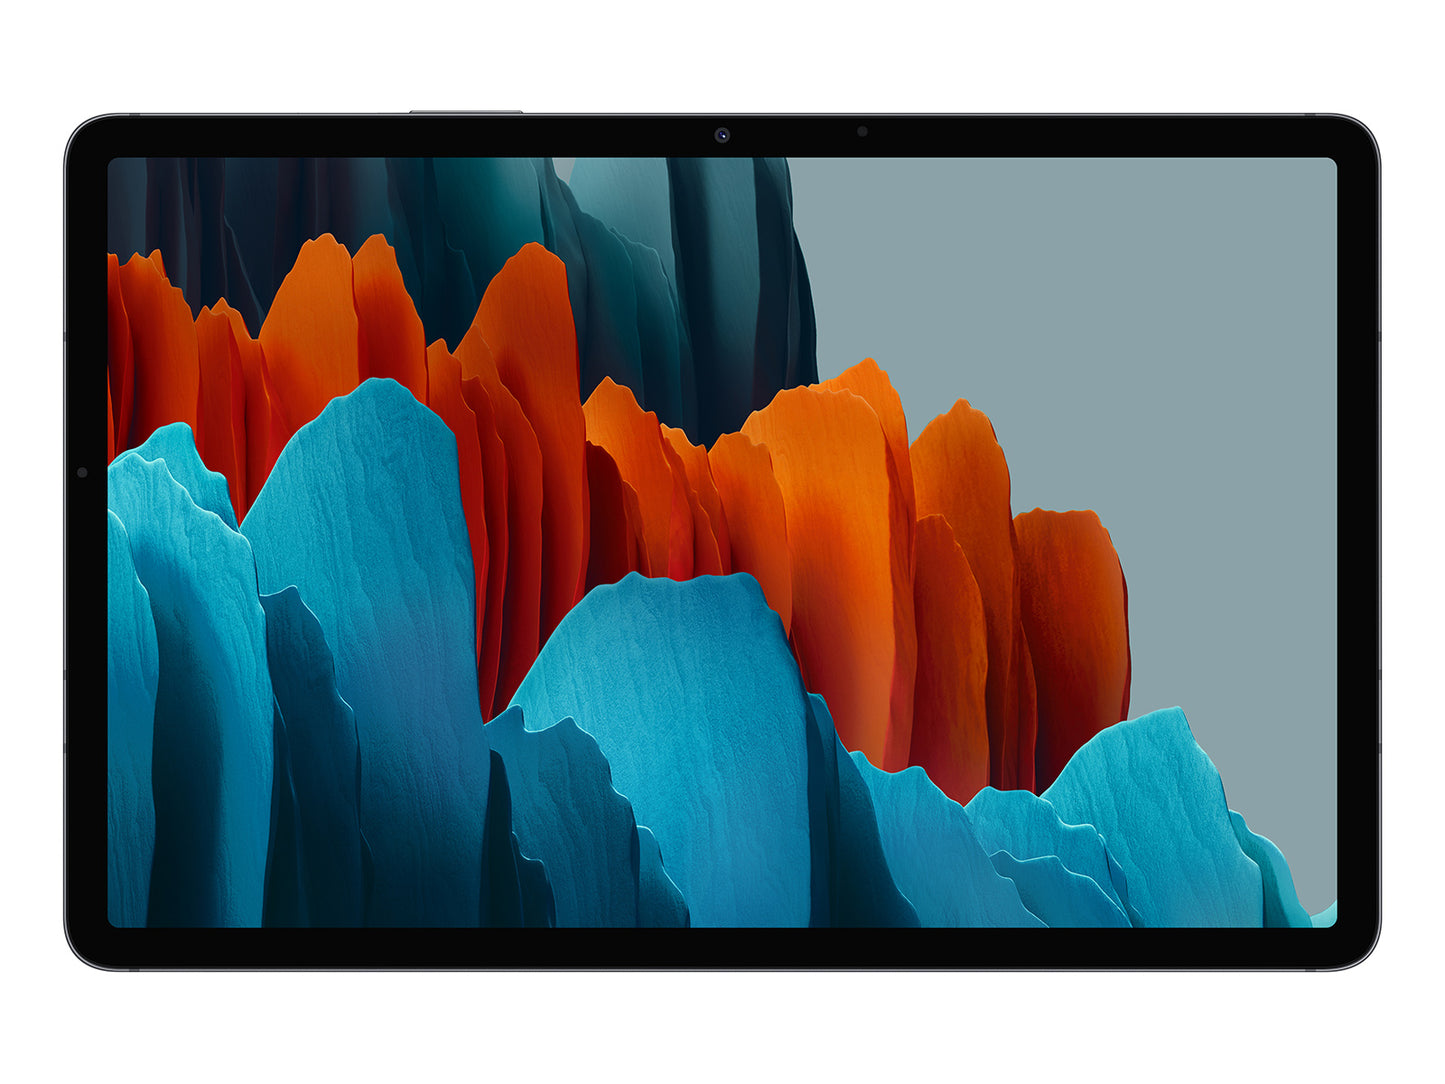 Samsung Galaxy Tab S7 128GB Tablet - Mystic Black SM-T870NZKAXAR (2020)